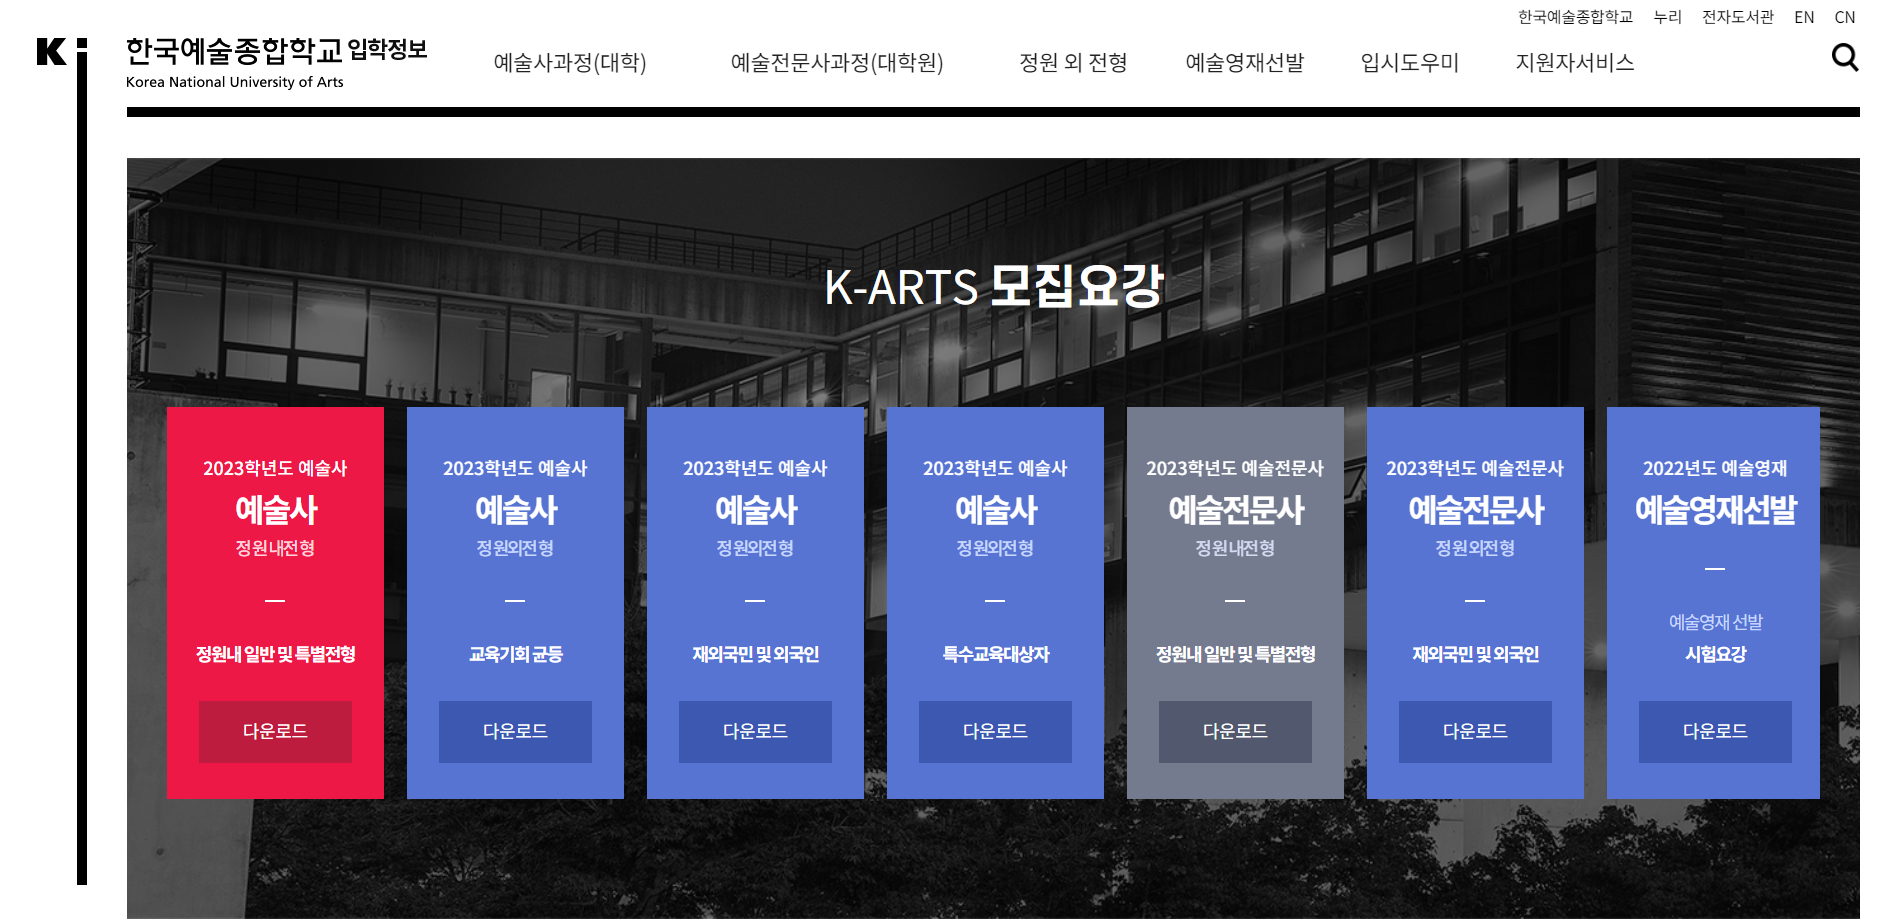 한국예술종합학교 입학정보 스크릿샷